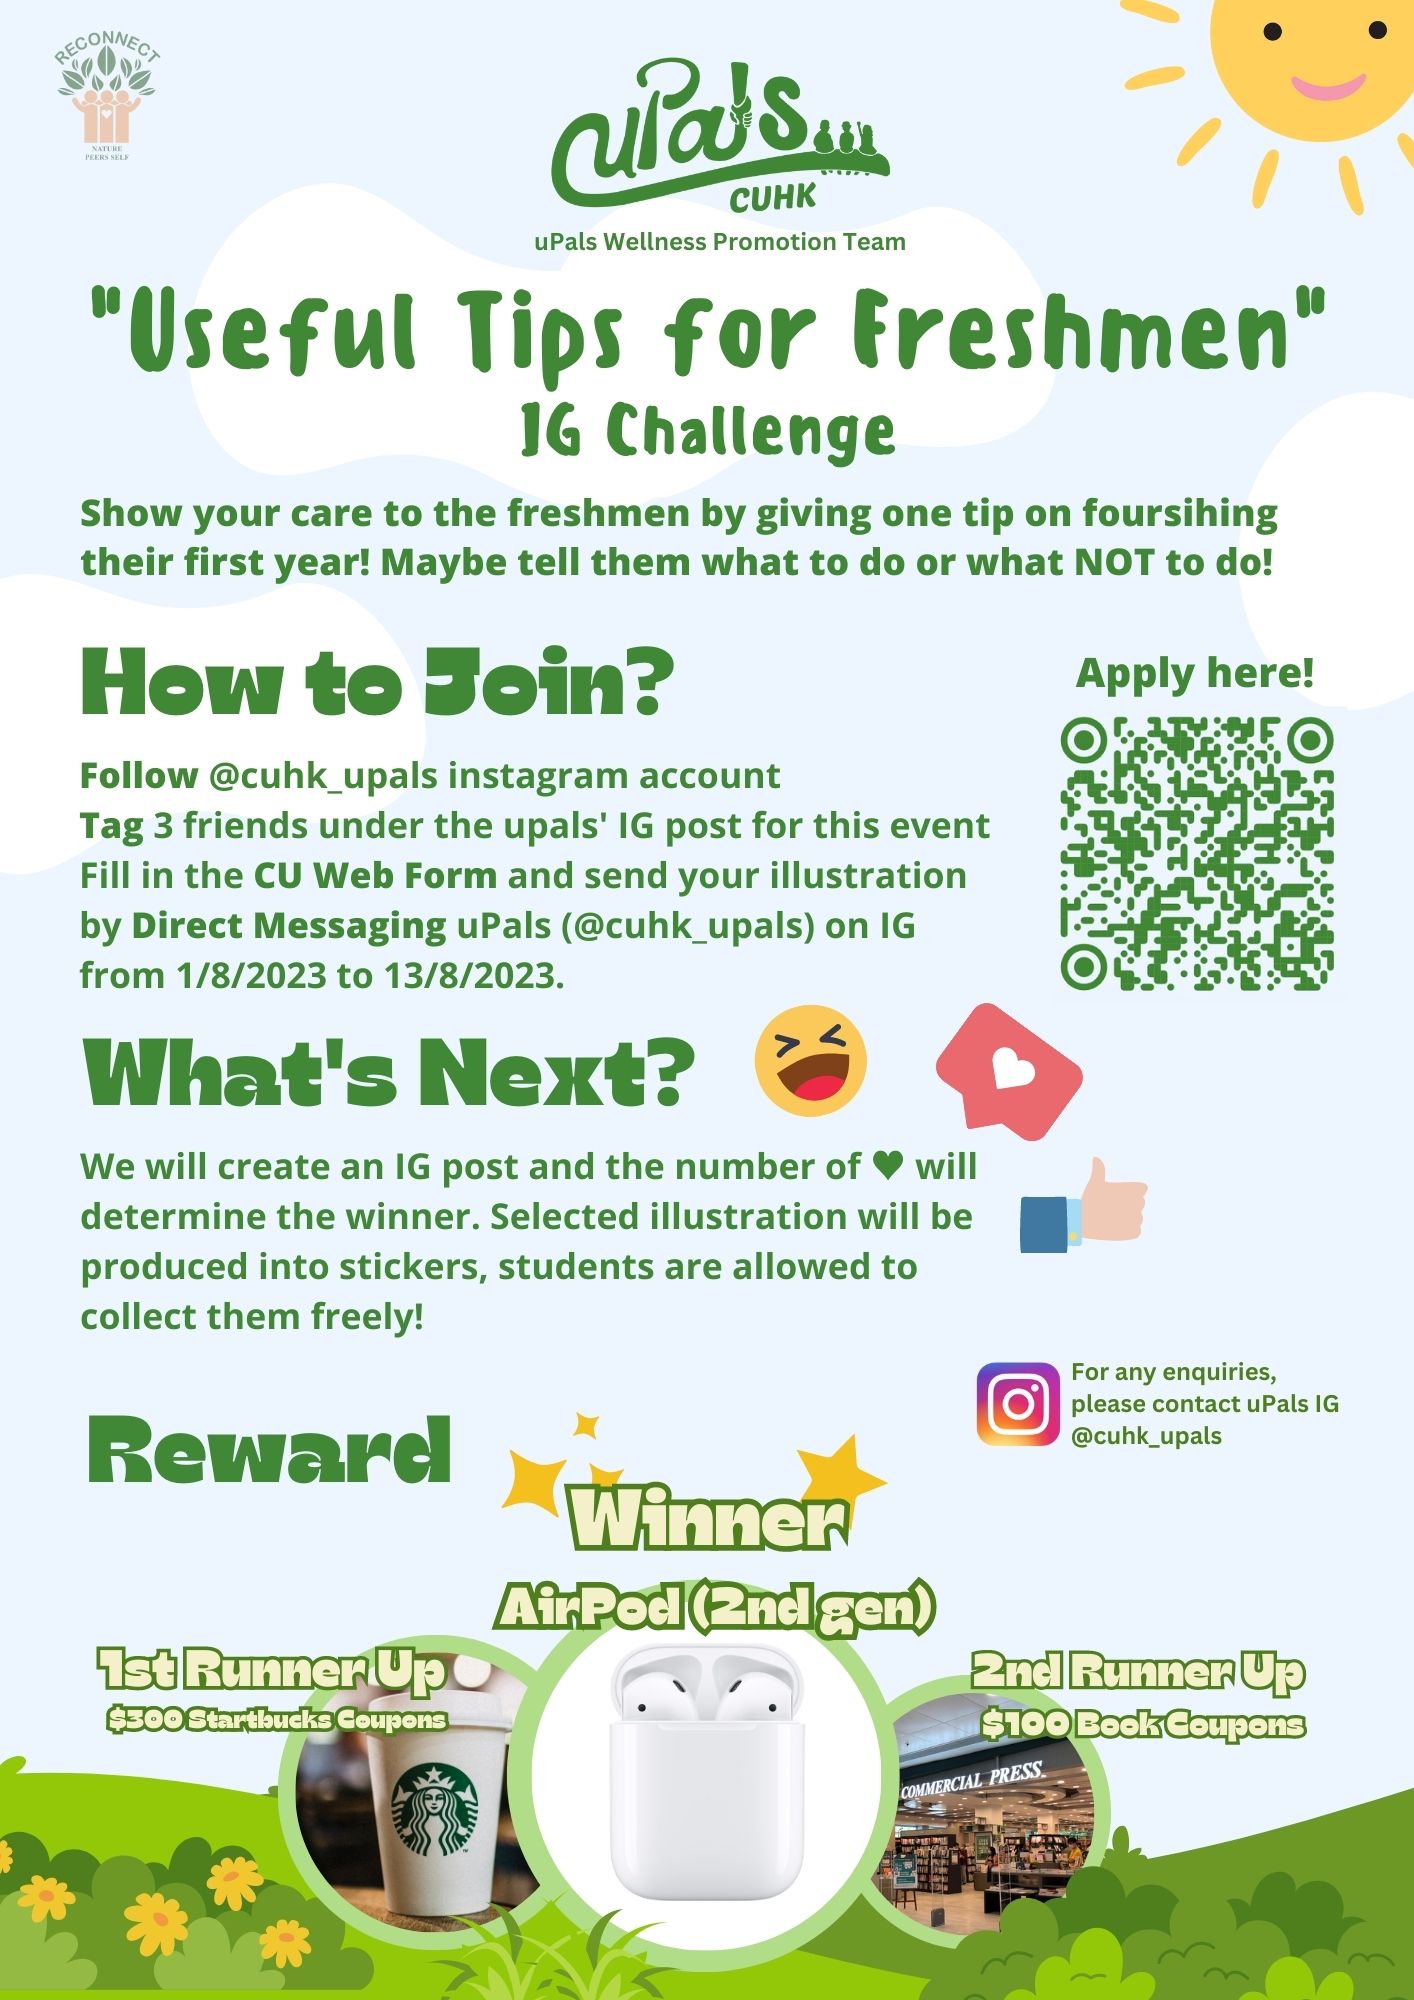 uPals “Useful Tips for Freshmen” IG Challenge